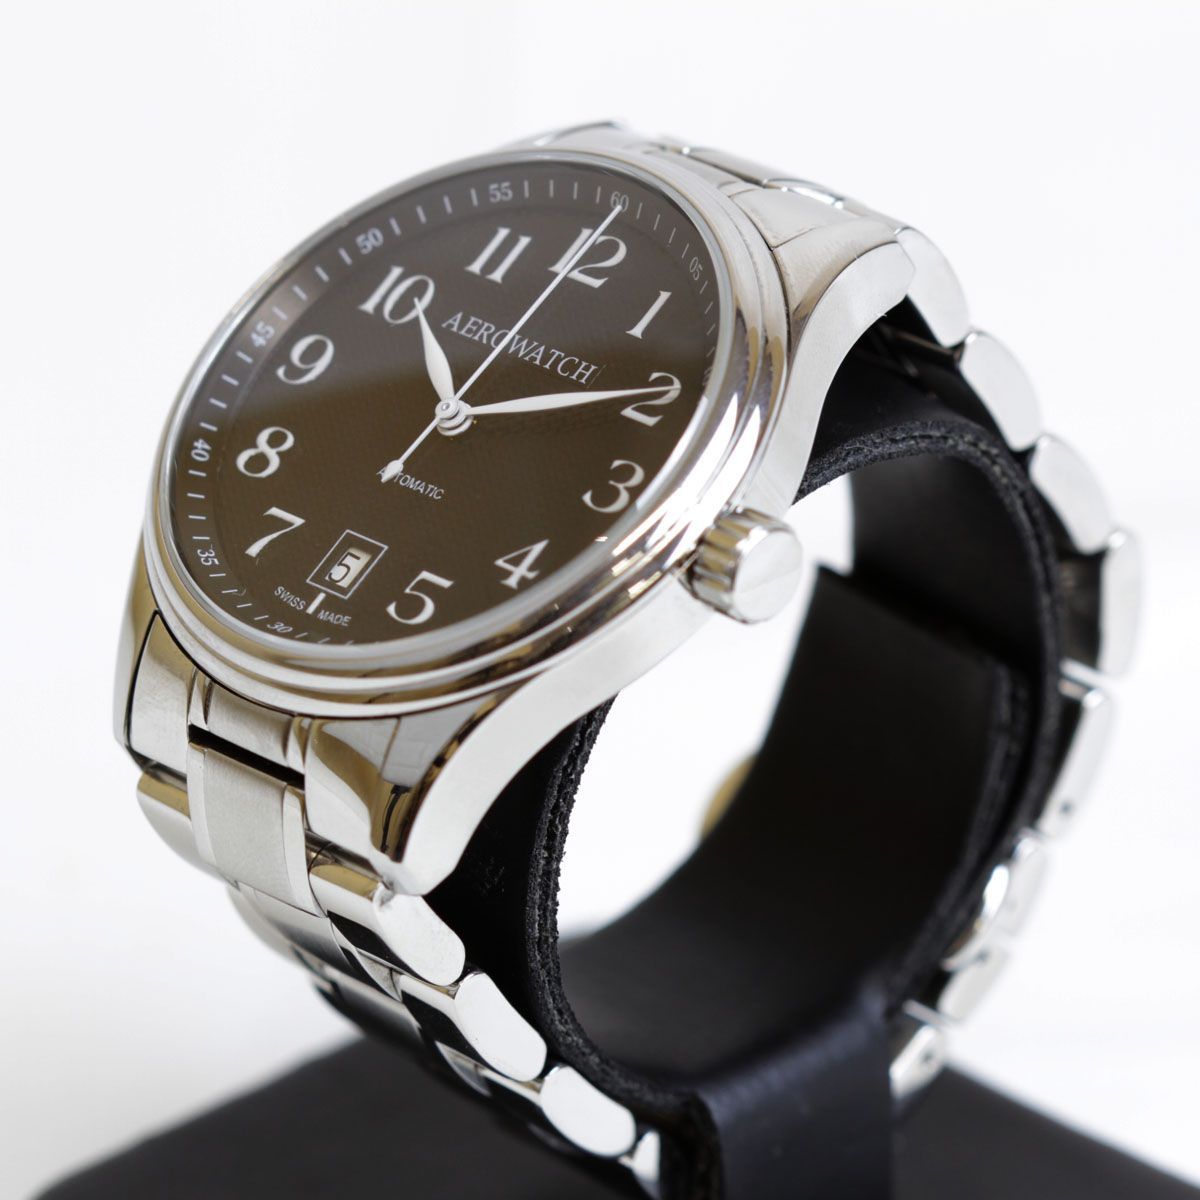 新品超激得美品『USED』AEROWATCH 56098 AT 腕時計 自動巻き メンズ 2針＋カレンダー